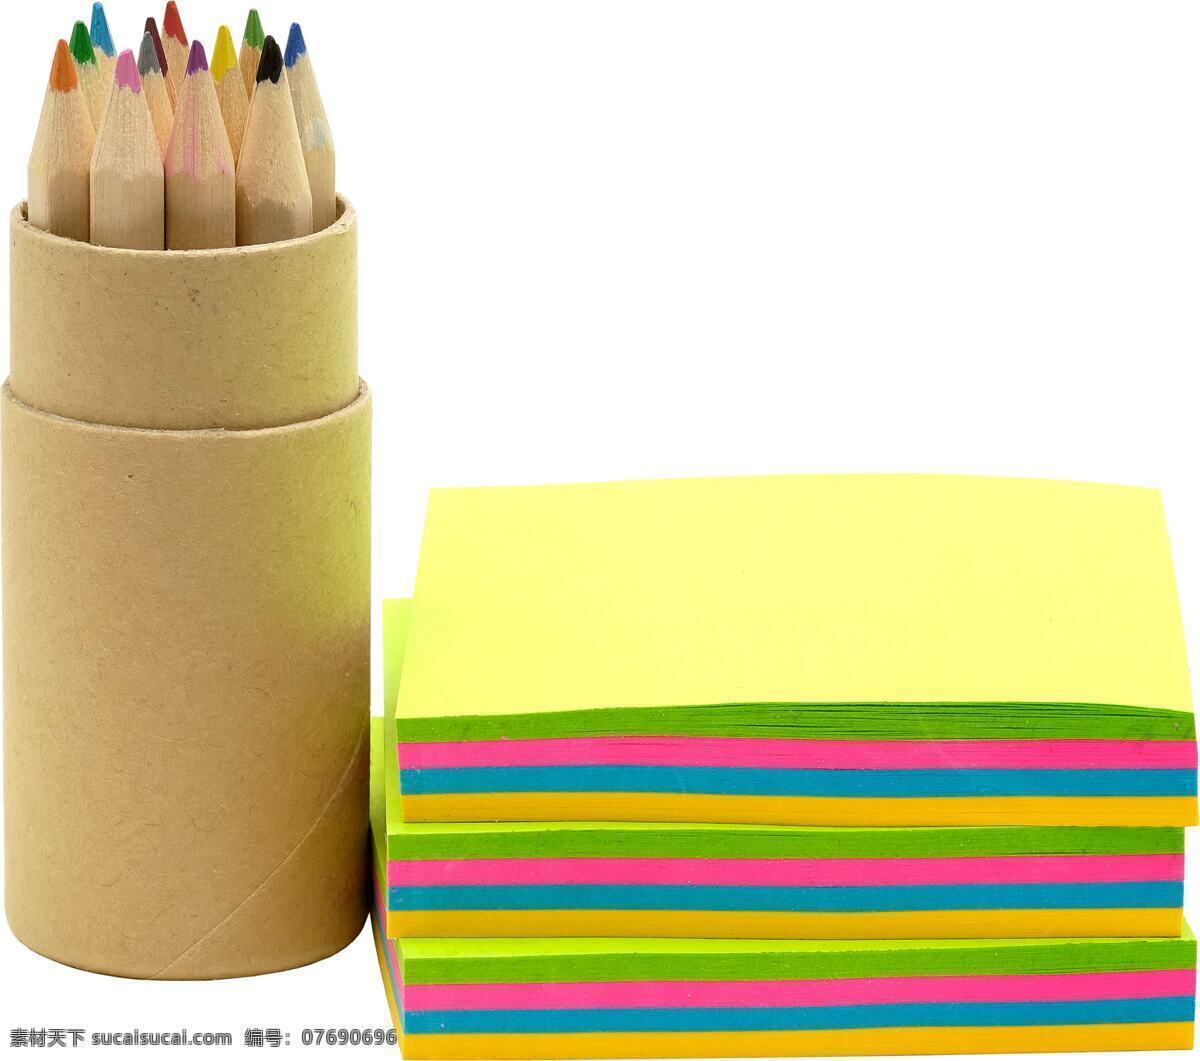 画本 彩色 笔 彩色画笔 铅笔 文具 学习用品 办公学习 彩色笔 蜡笔 彩色铅笔 本子 画本与彩色笔 生活百科